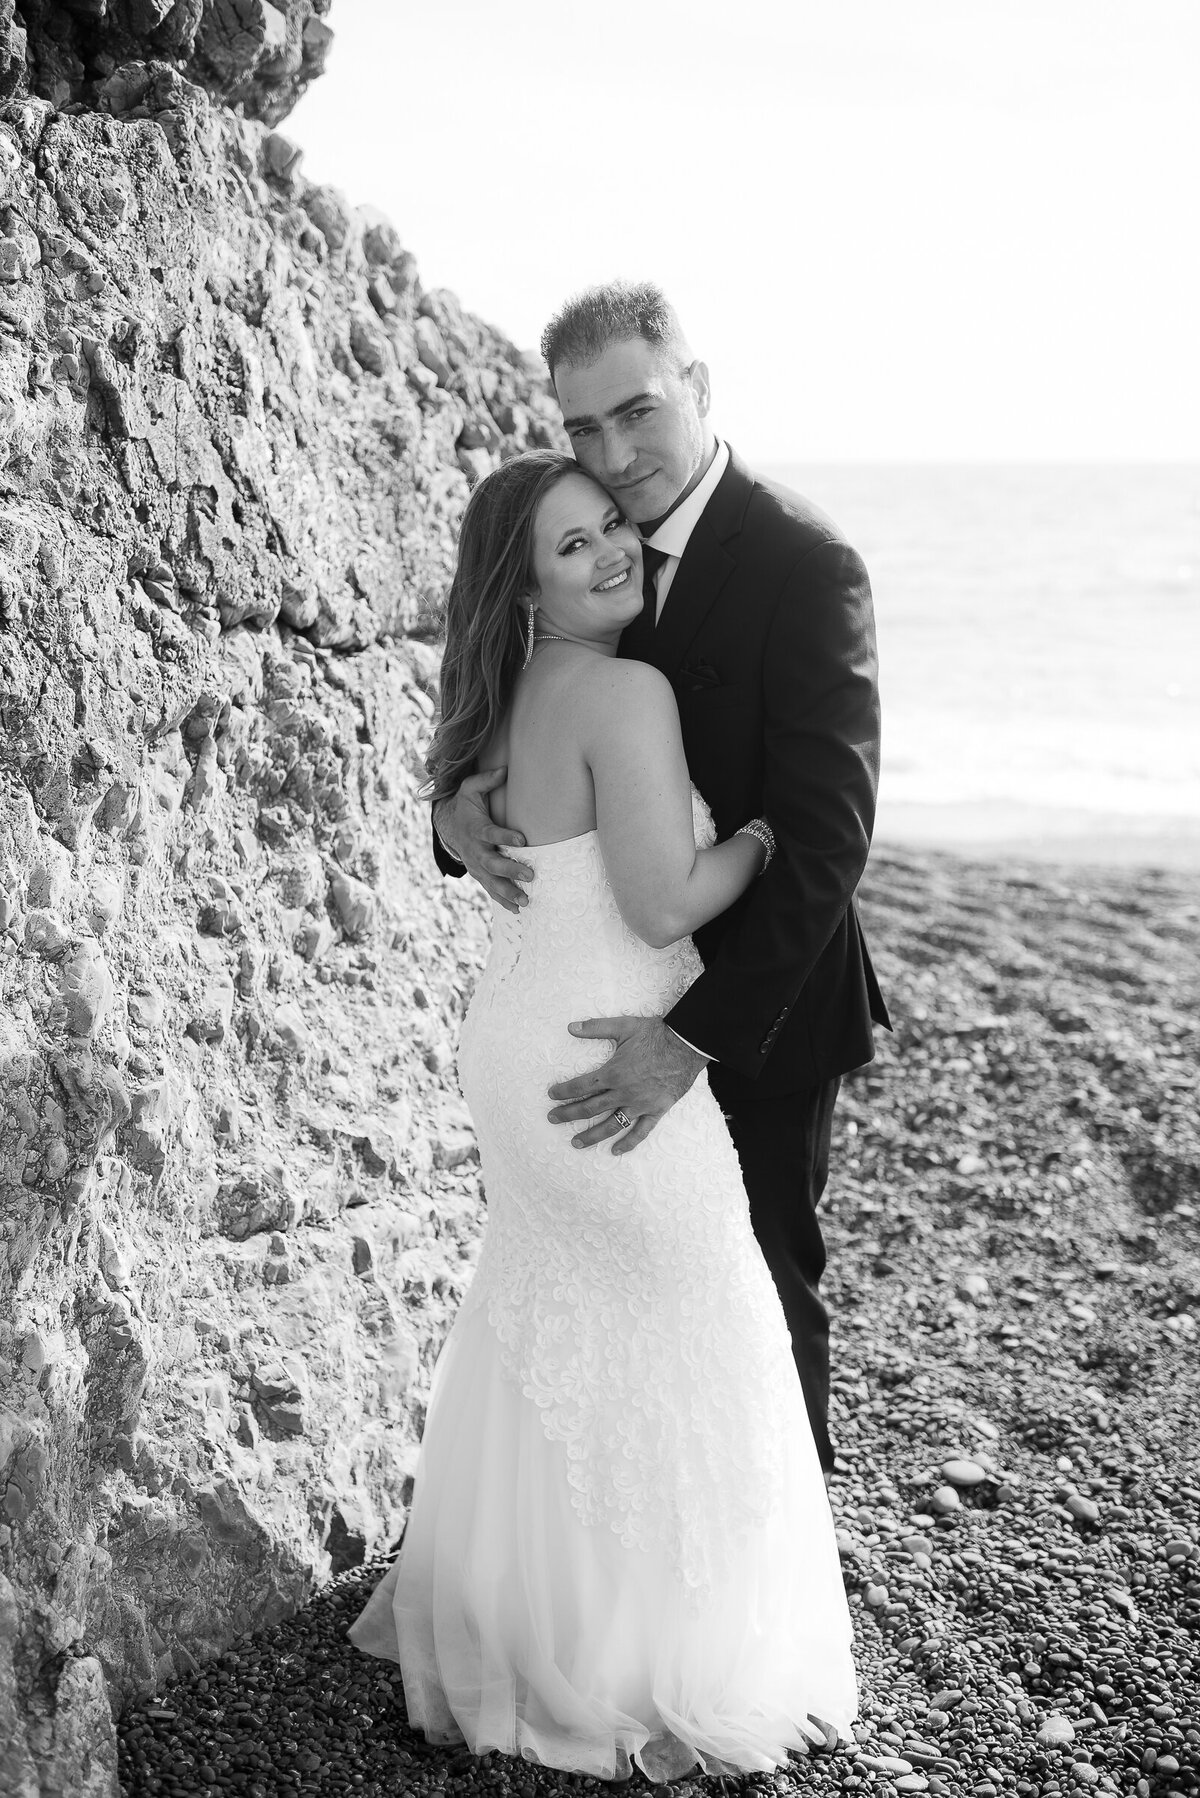 Shelter-Cove-Black-Sannds-Beach-photographer-adventure-elopement-intimate-destination-wedding-nor-cal-beach-elopement-12